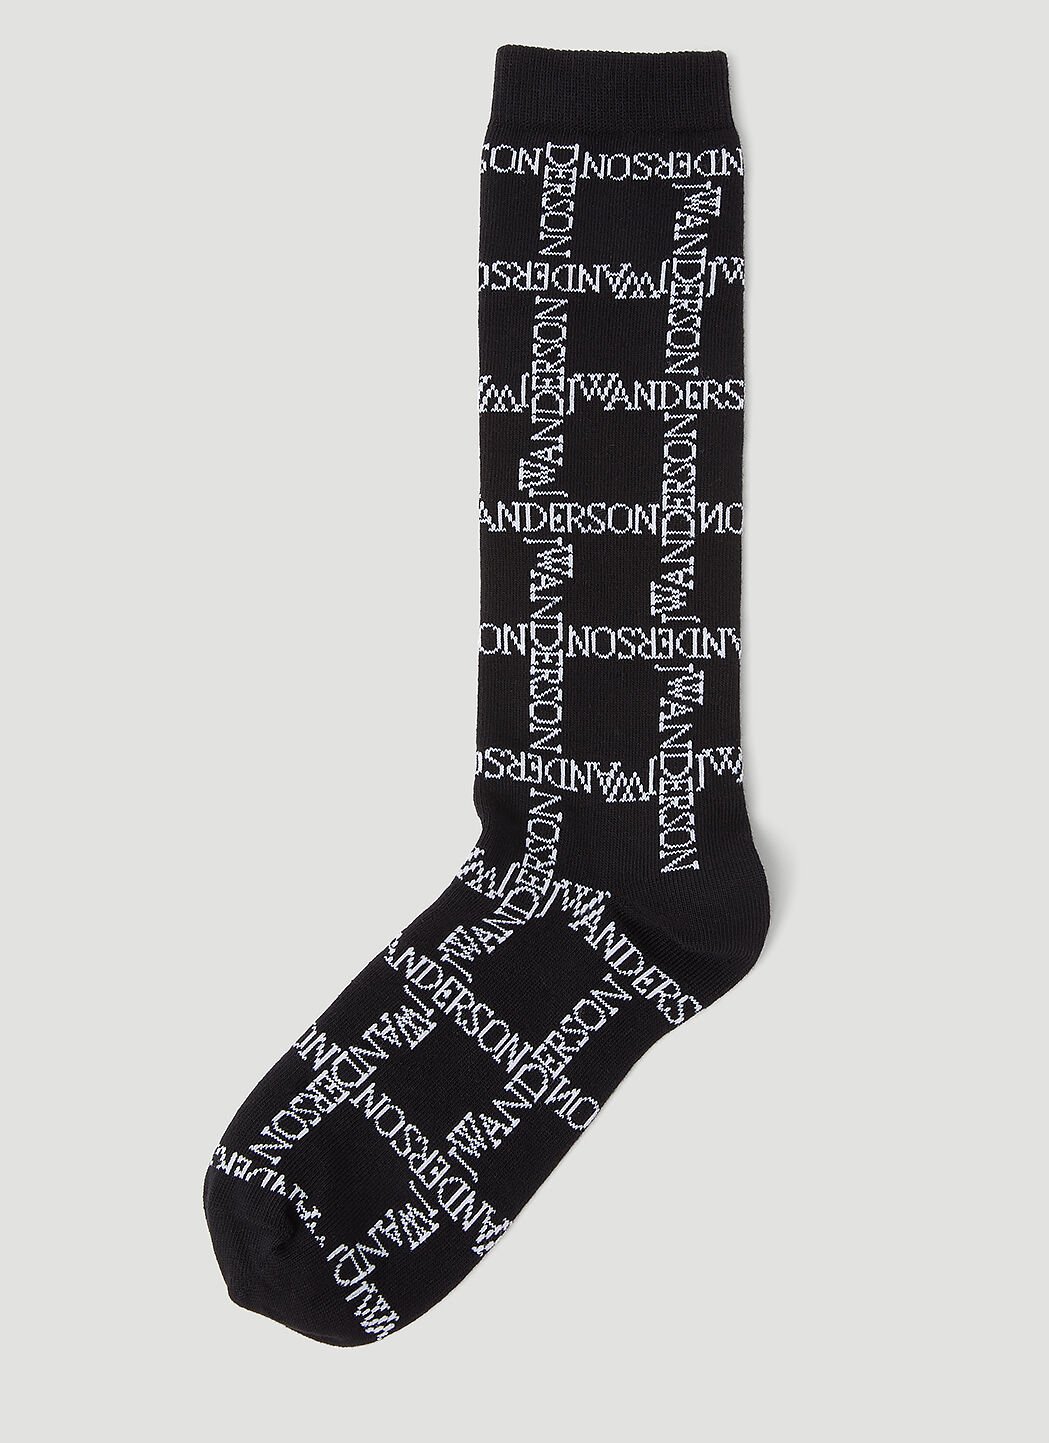 Carne Bollente Logo Grid Long Socks Black cbn0356011